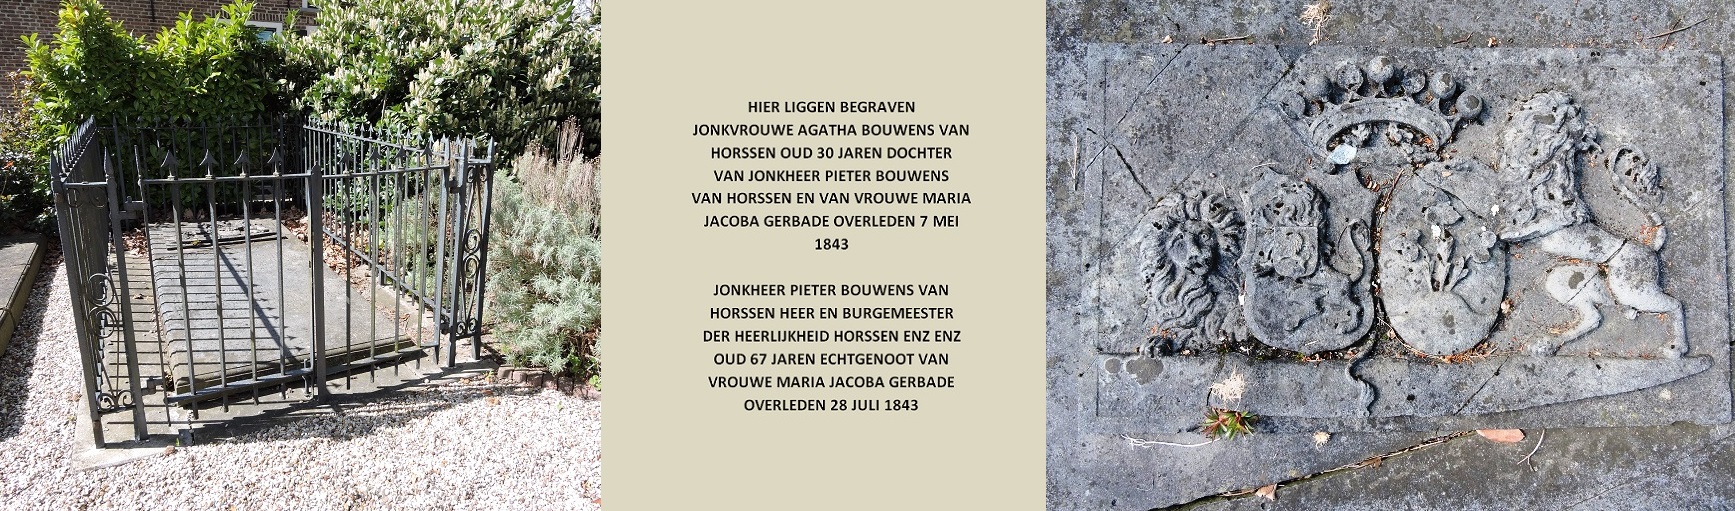 Afb. 2. Het graf van jonkheer Pieter Bouwens van Horssen (1775-1843) en van zijn oudste dochter freule Agatha Bouwens van Horssen (1812-1843), met het alliantiewapen Bouwens van Horssen-Gerbade.